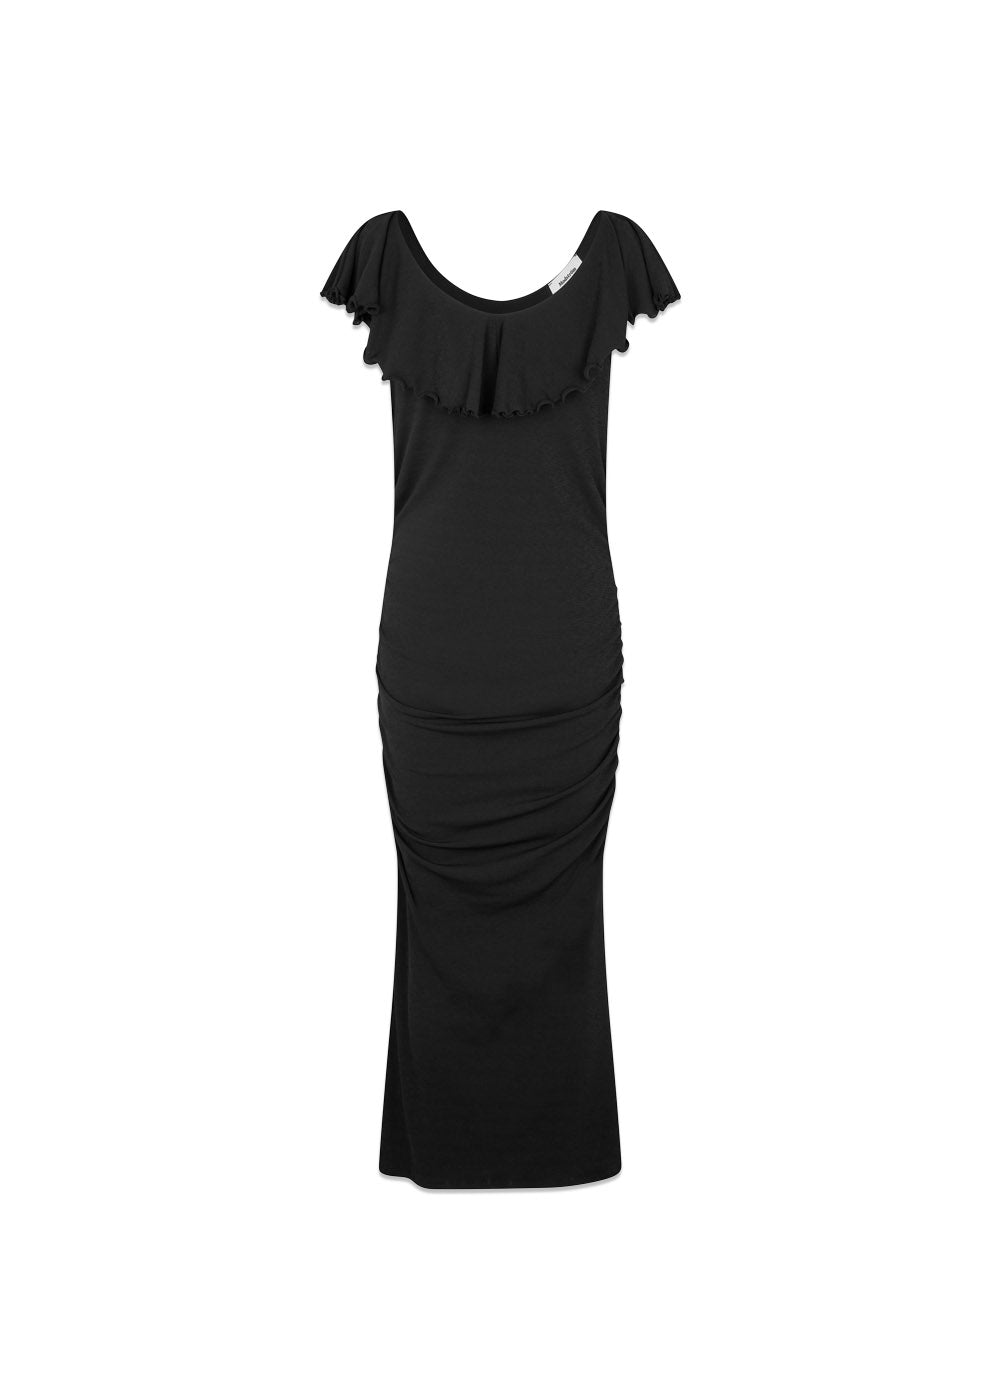 HugoMD dress - Black